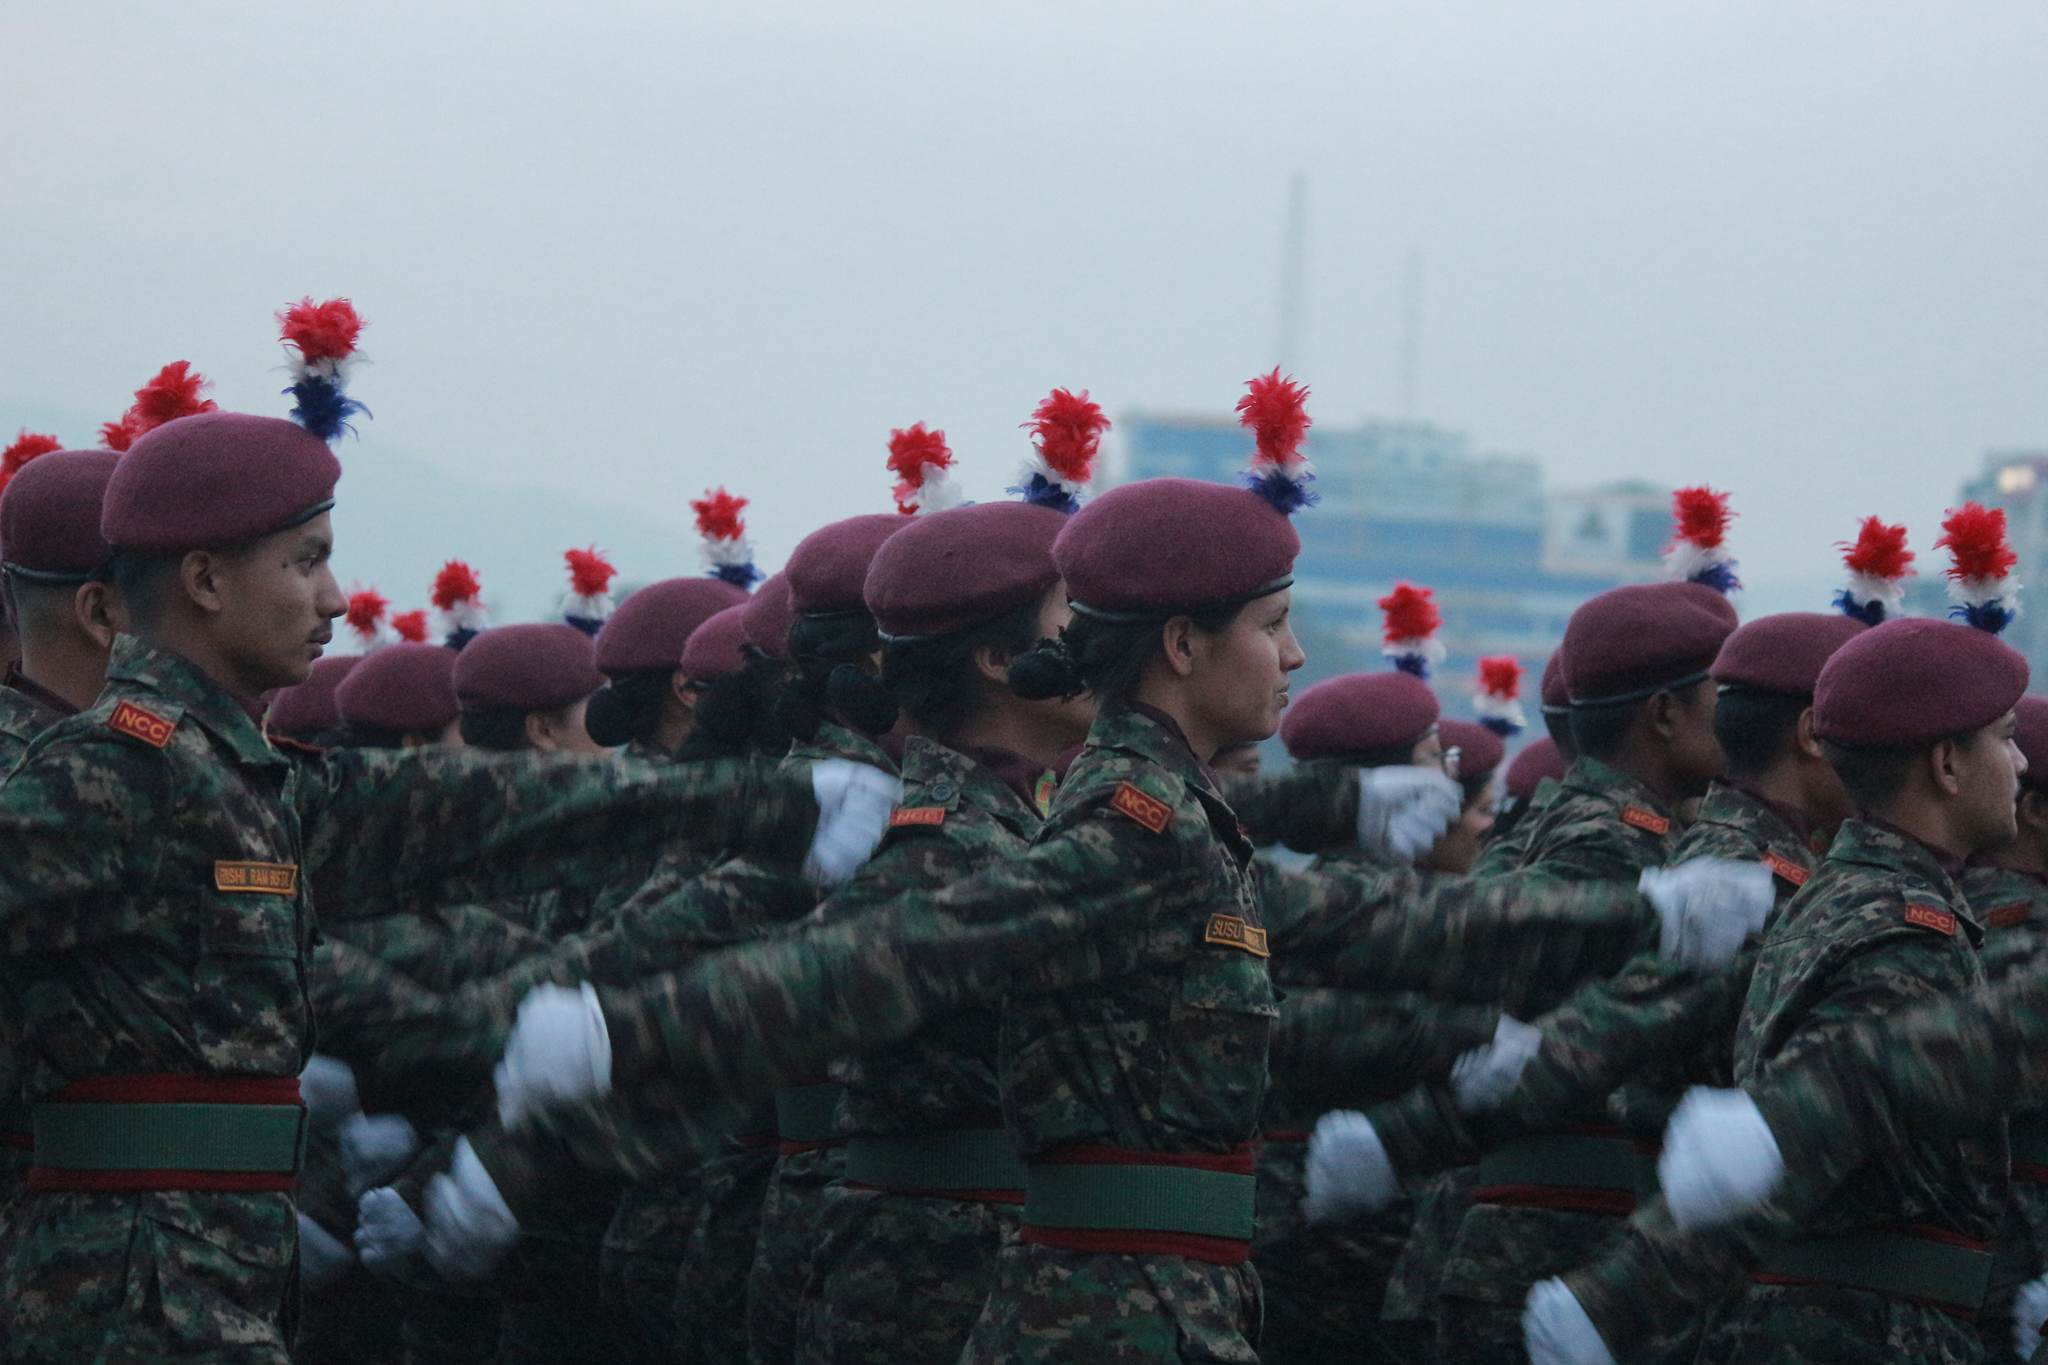 सेना दिवसको अवसरमा काठमाडौंमा गरिएको कार्यक्रममा सहभागी परेड खेल्दै नेपाली सेना । तस्बिर, बाह्रखरी